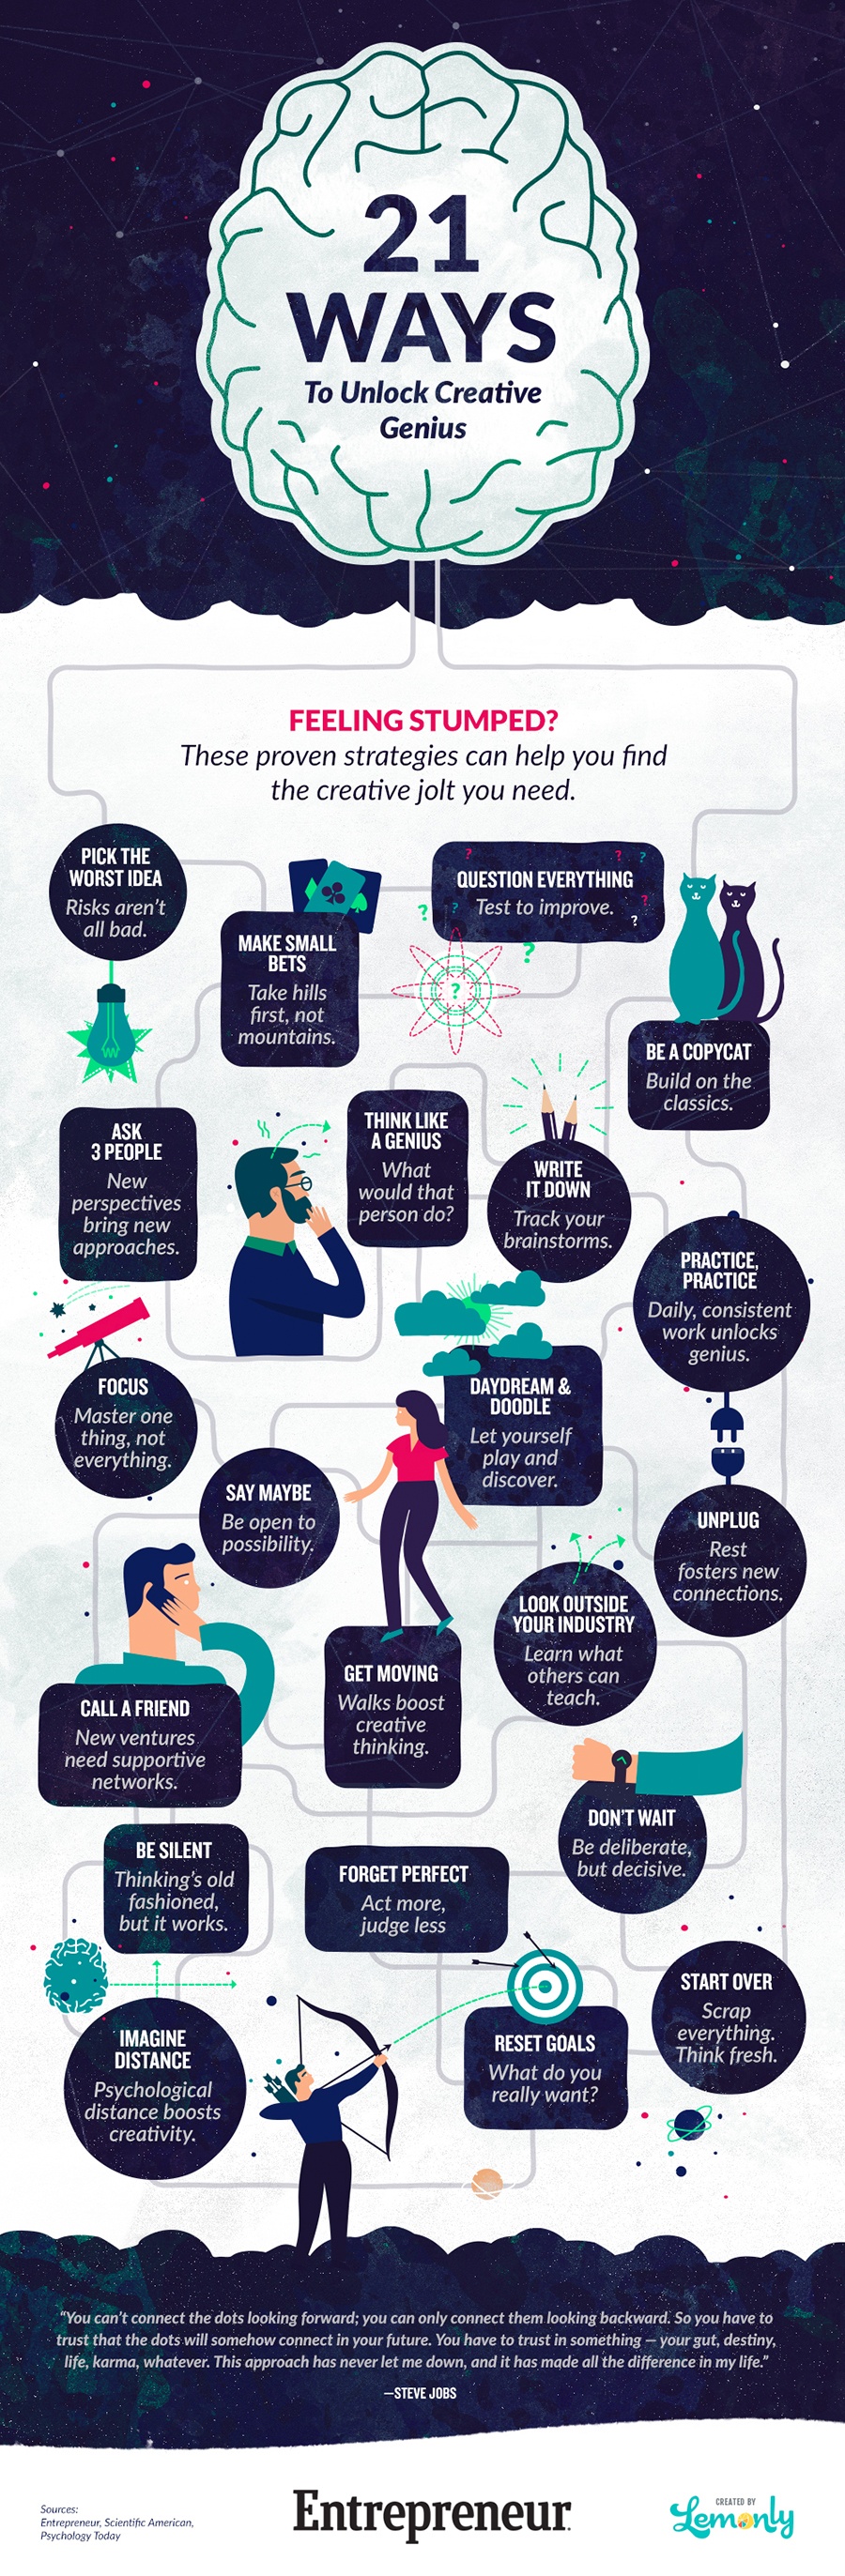 21-ways-creative-genius-infographic